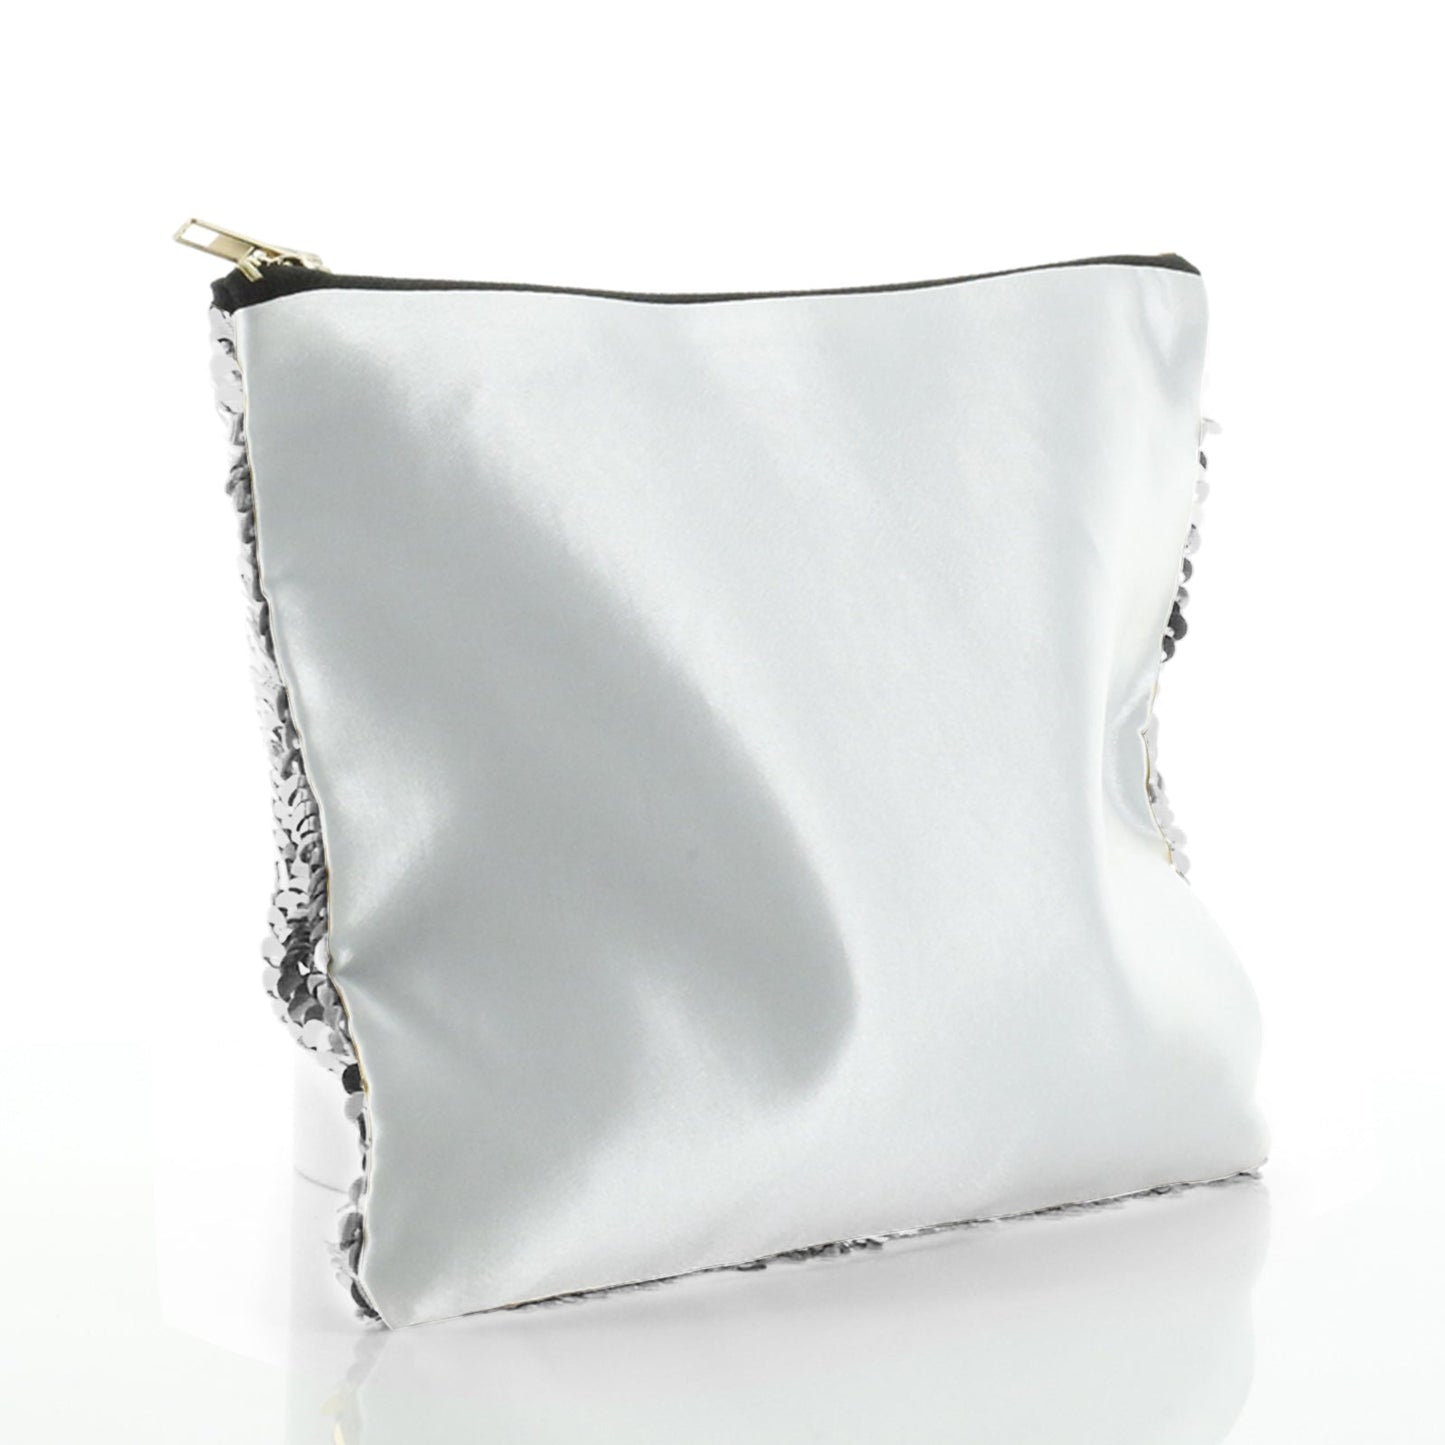 Personalisierte Pailletten-Reißverschlusstasche mit stilvollem Text und Amor-Herzen-Aufdruck